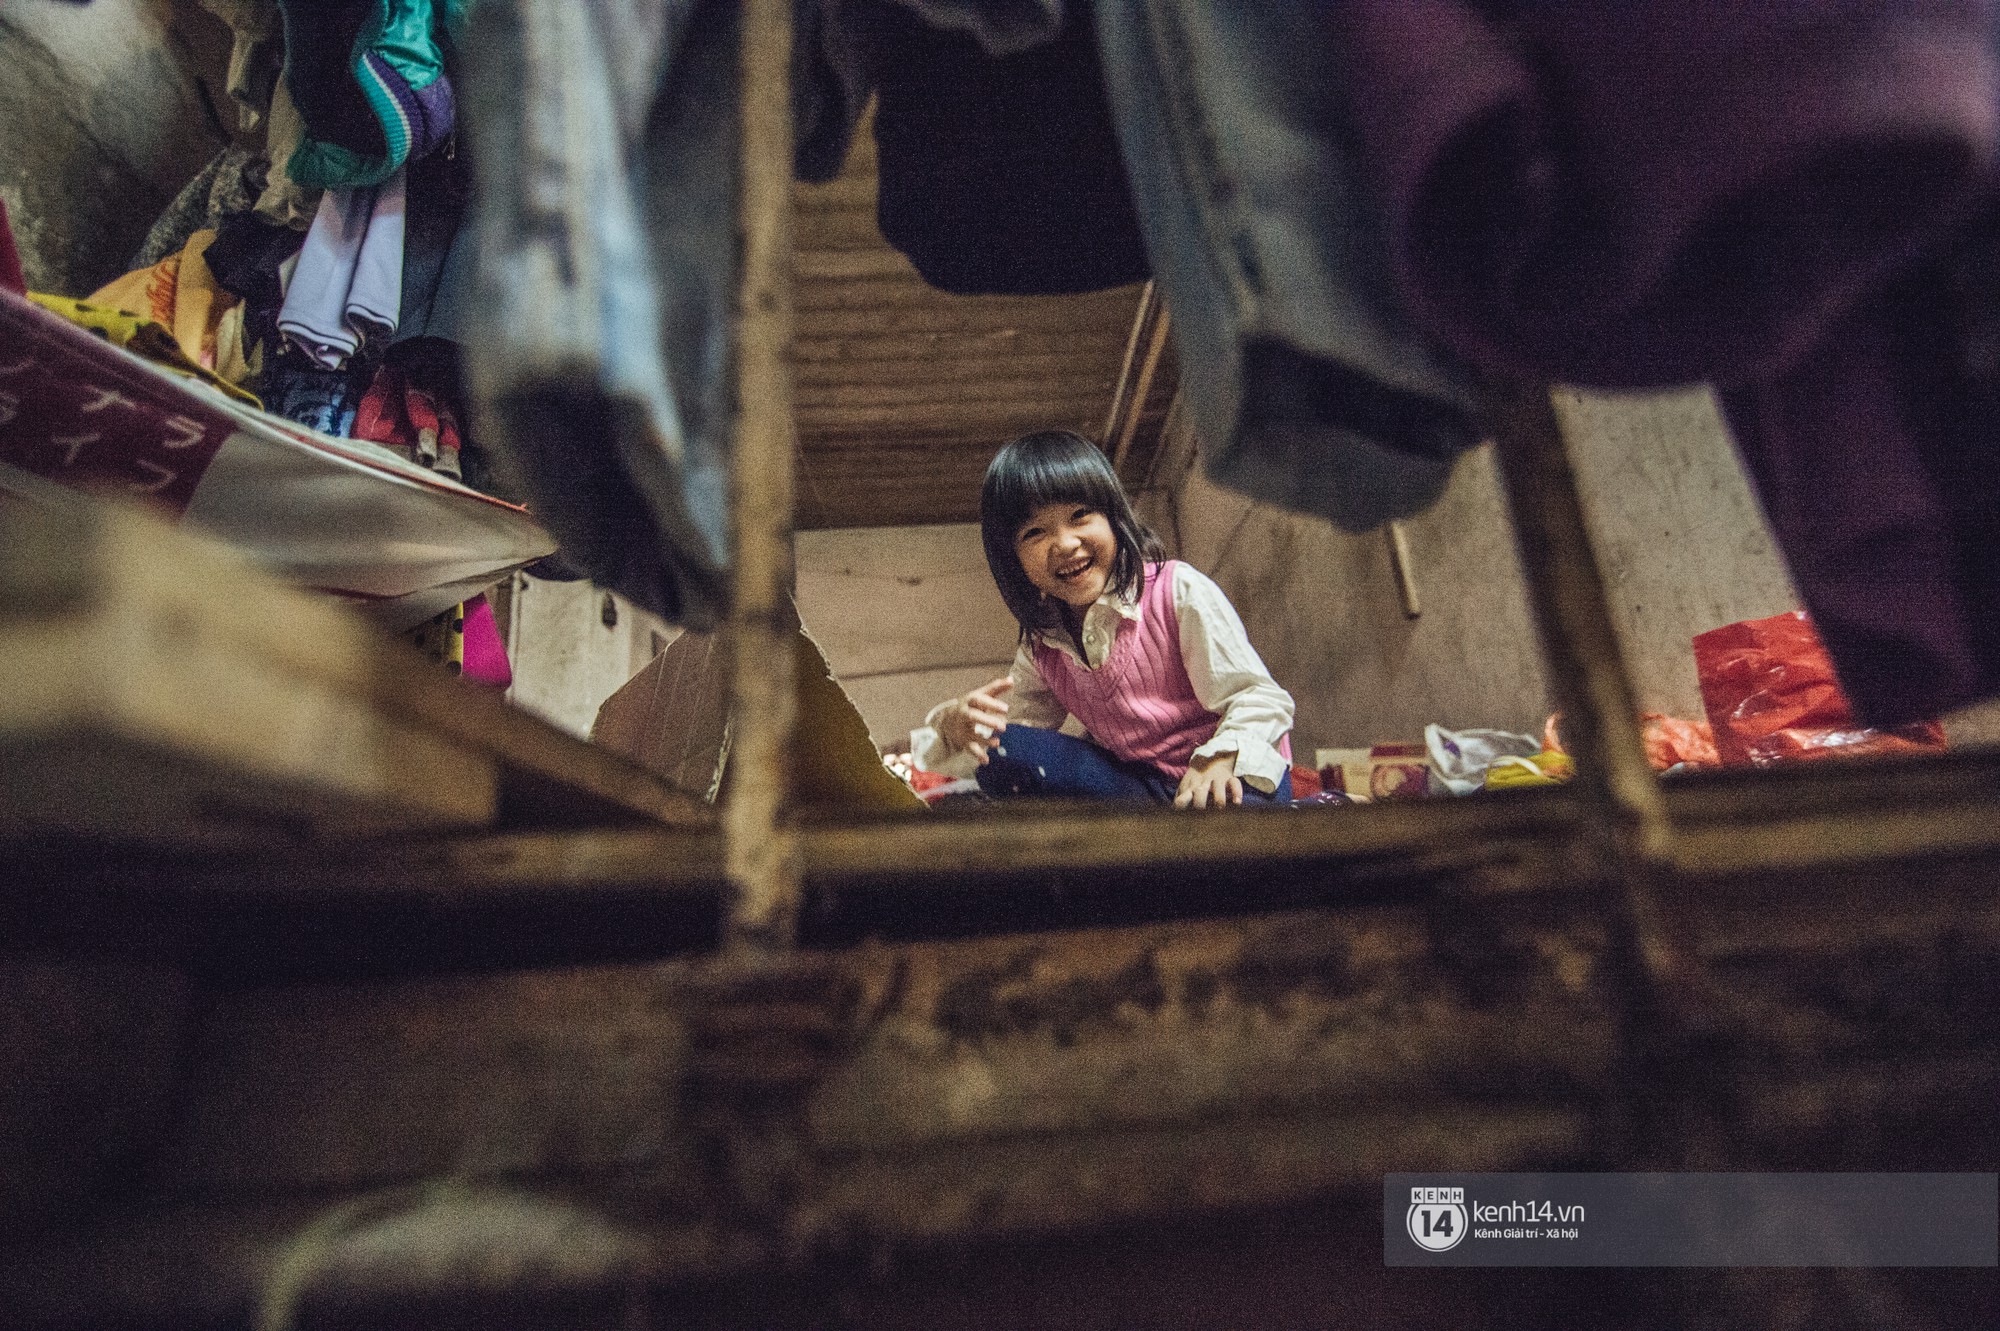 Chùm ảnh: Những khoảnh khắc đốn tim của em bé nghèo có gu ăn mặc như fashionista ở Hà Nội - Ảnh 2.